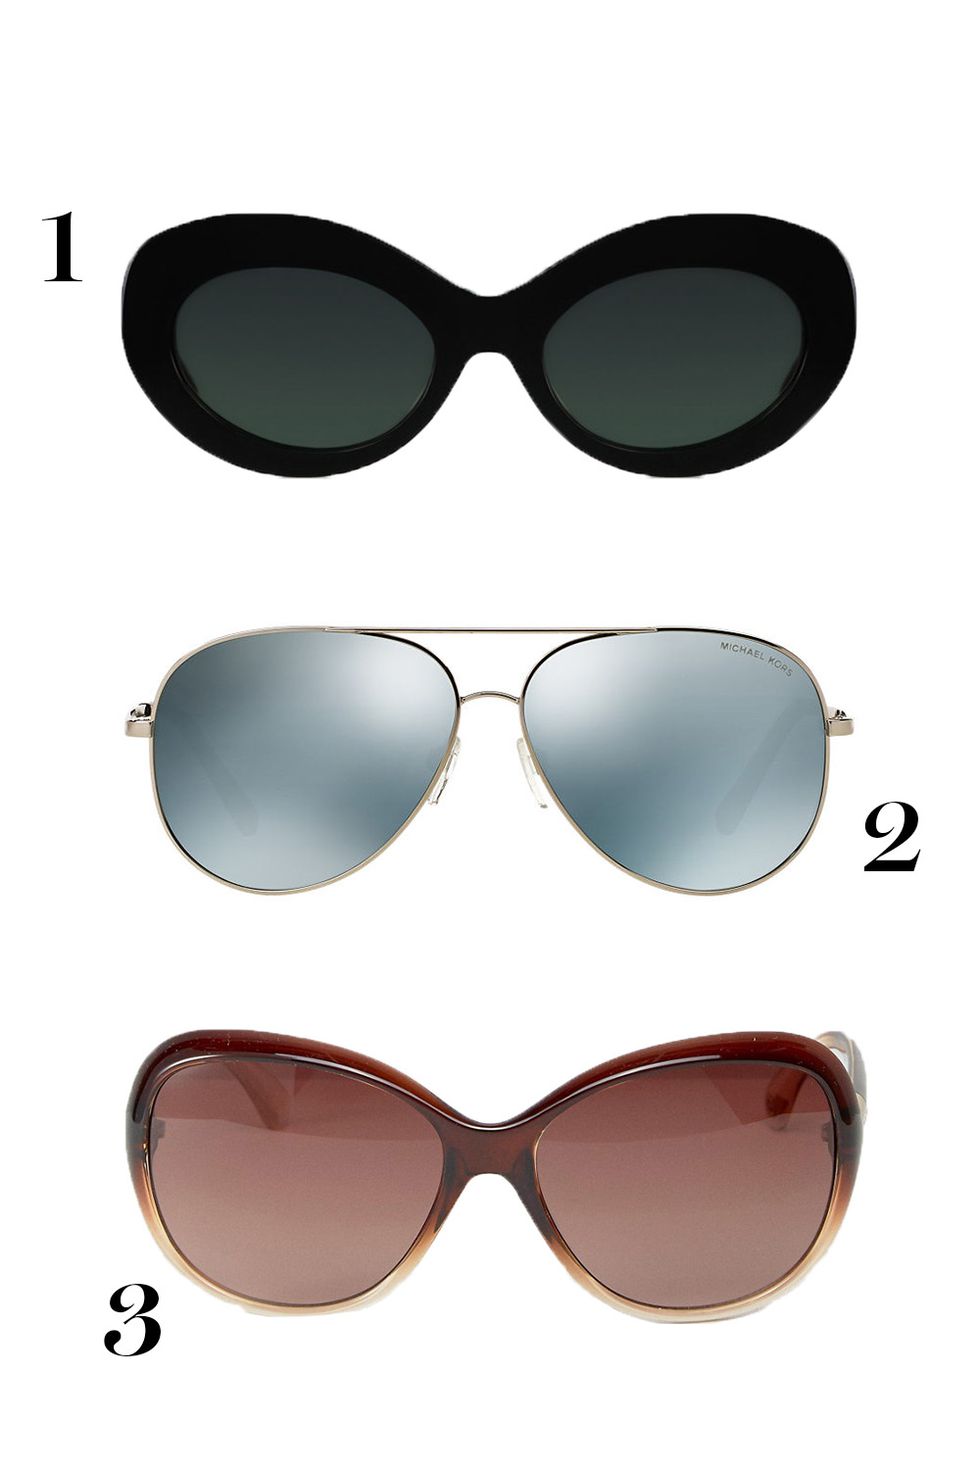 sunglasses-face-shapesquare.jpg